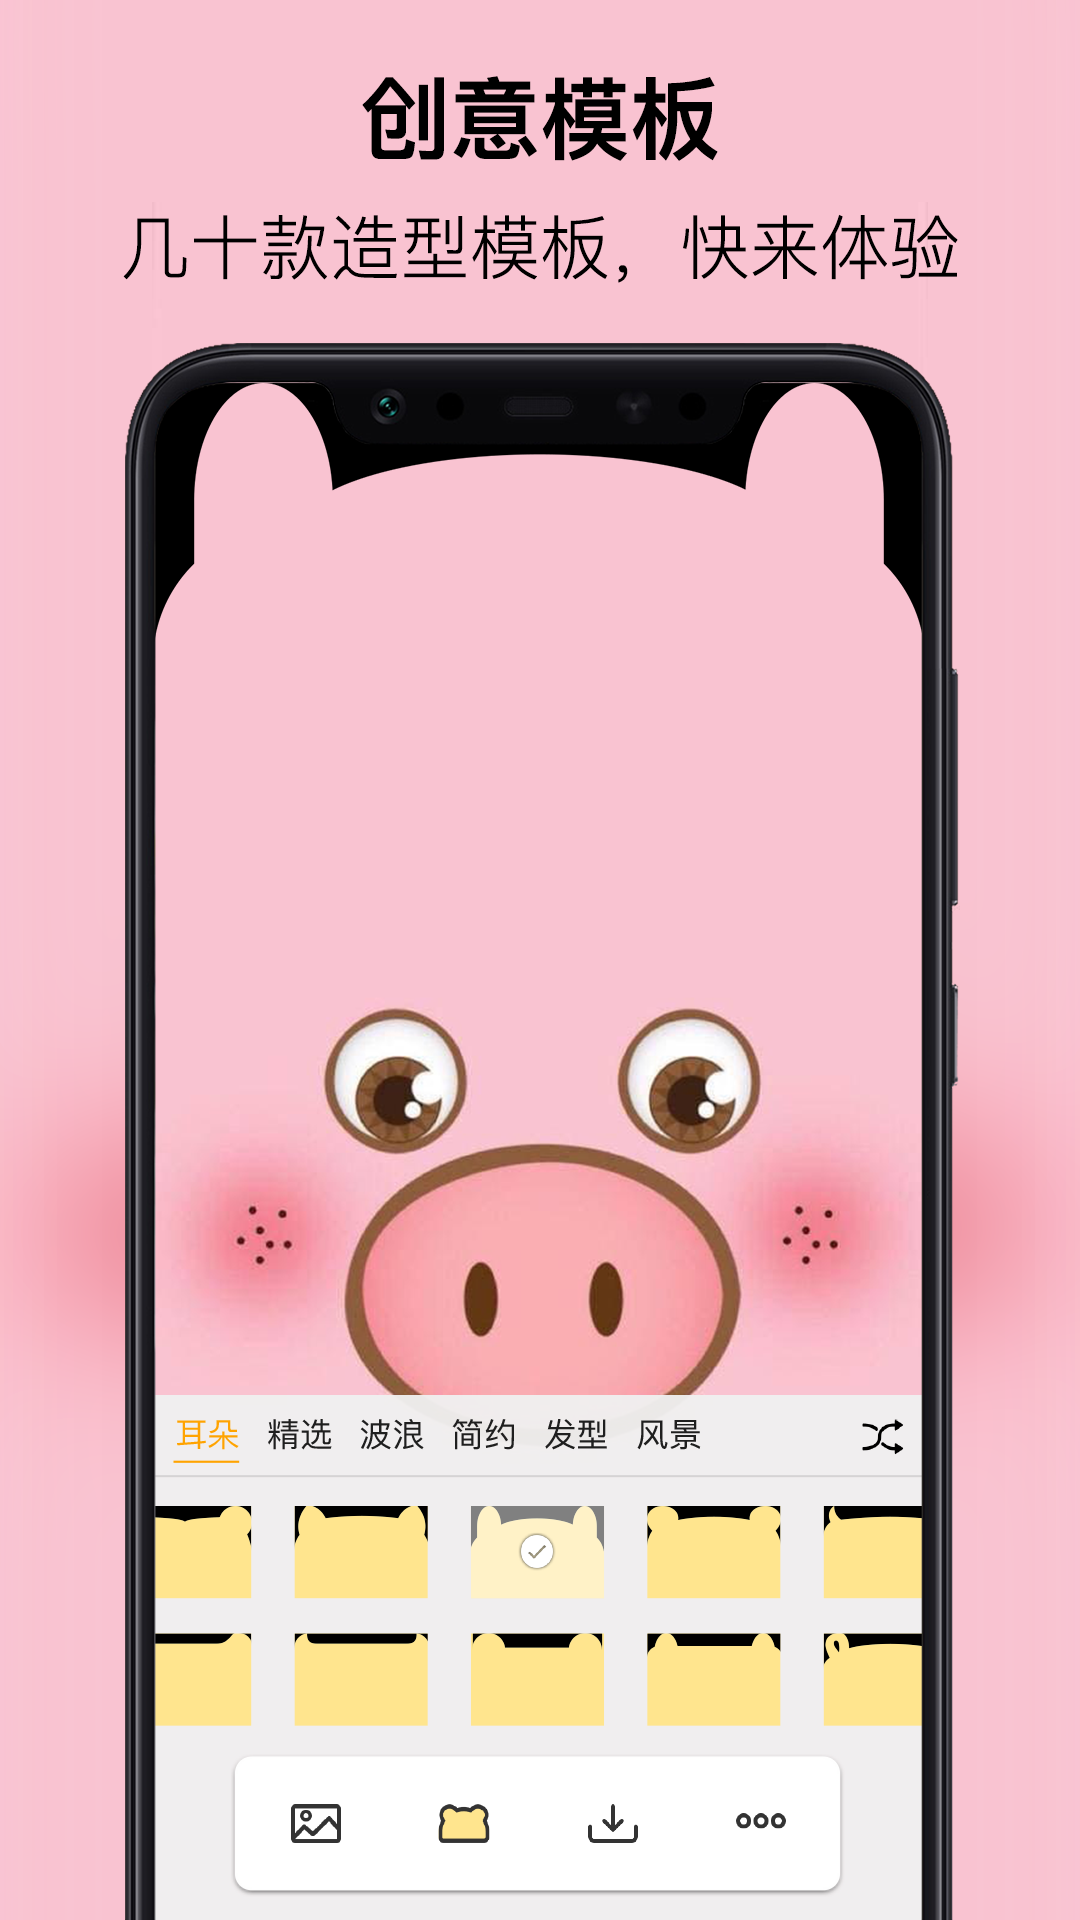 刘海壁纸app下载-刘海壁纸app安卓版下载v3.0.0 截图1